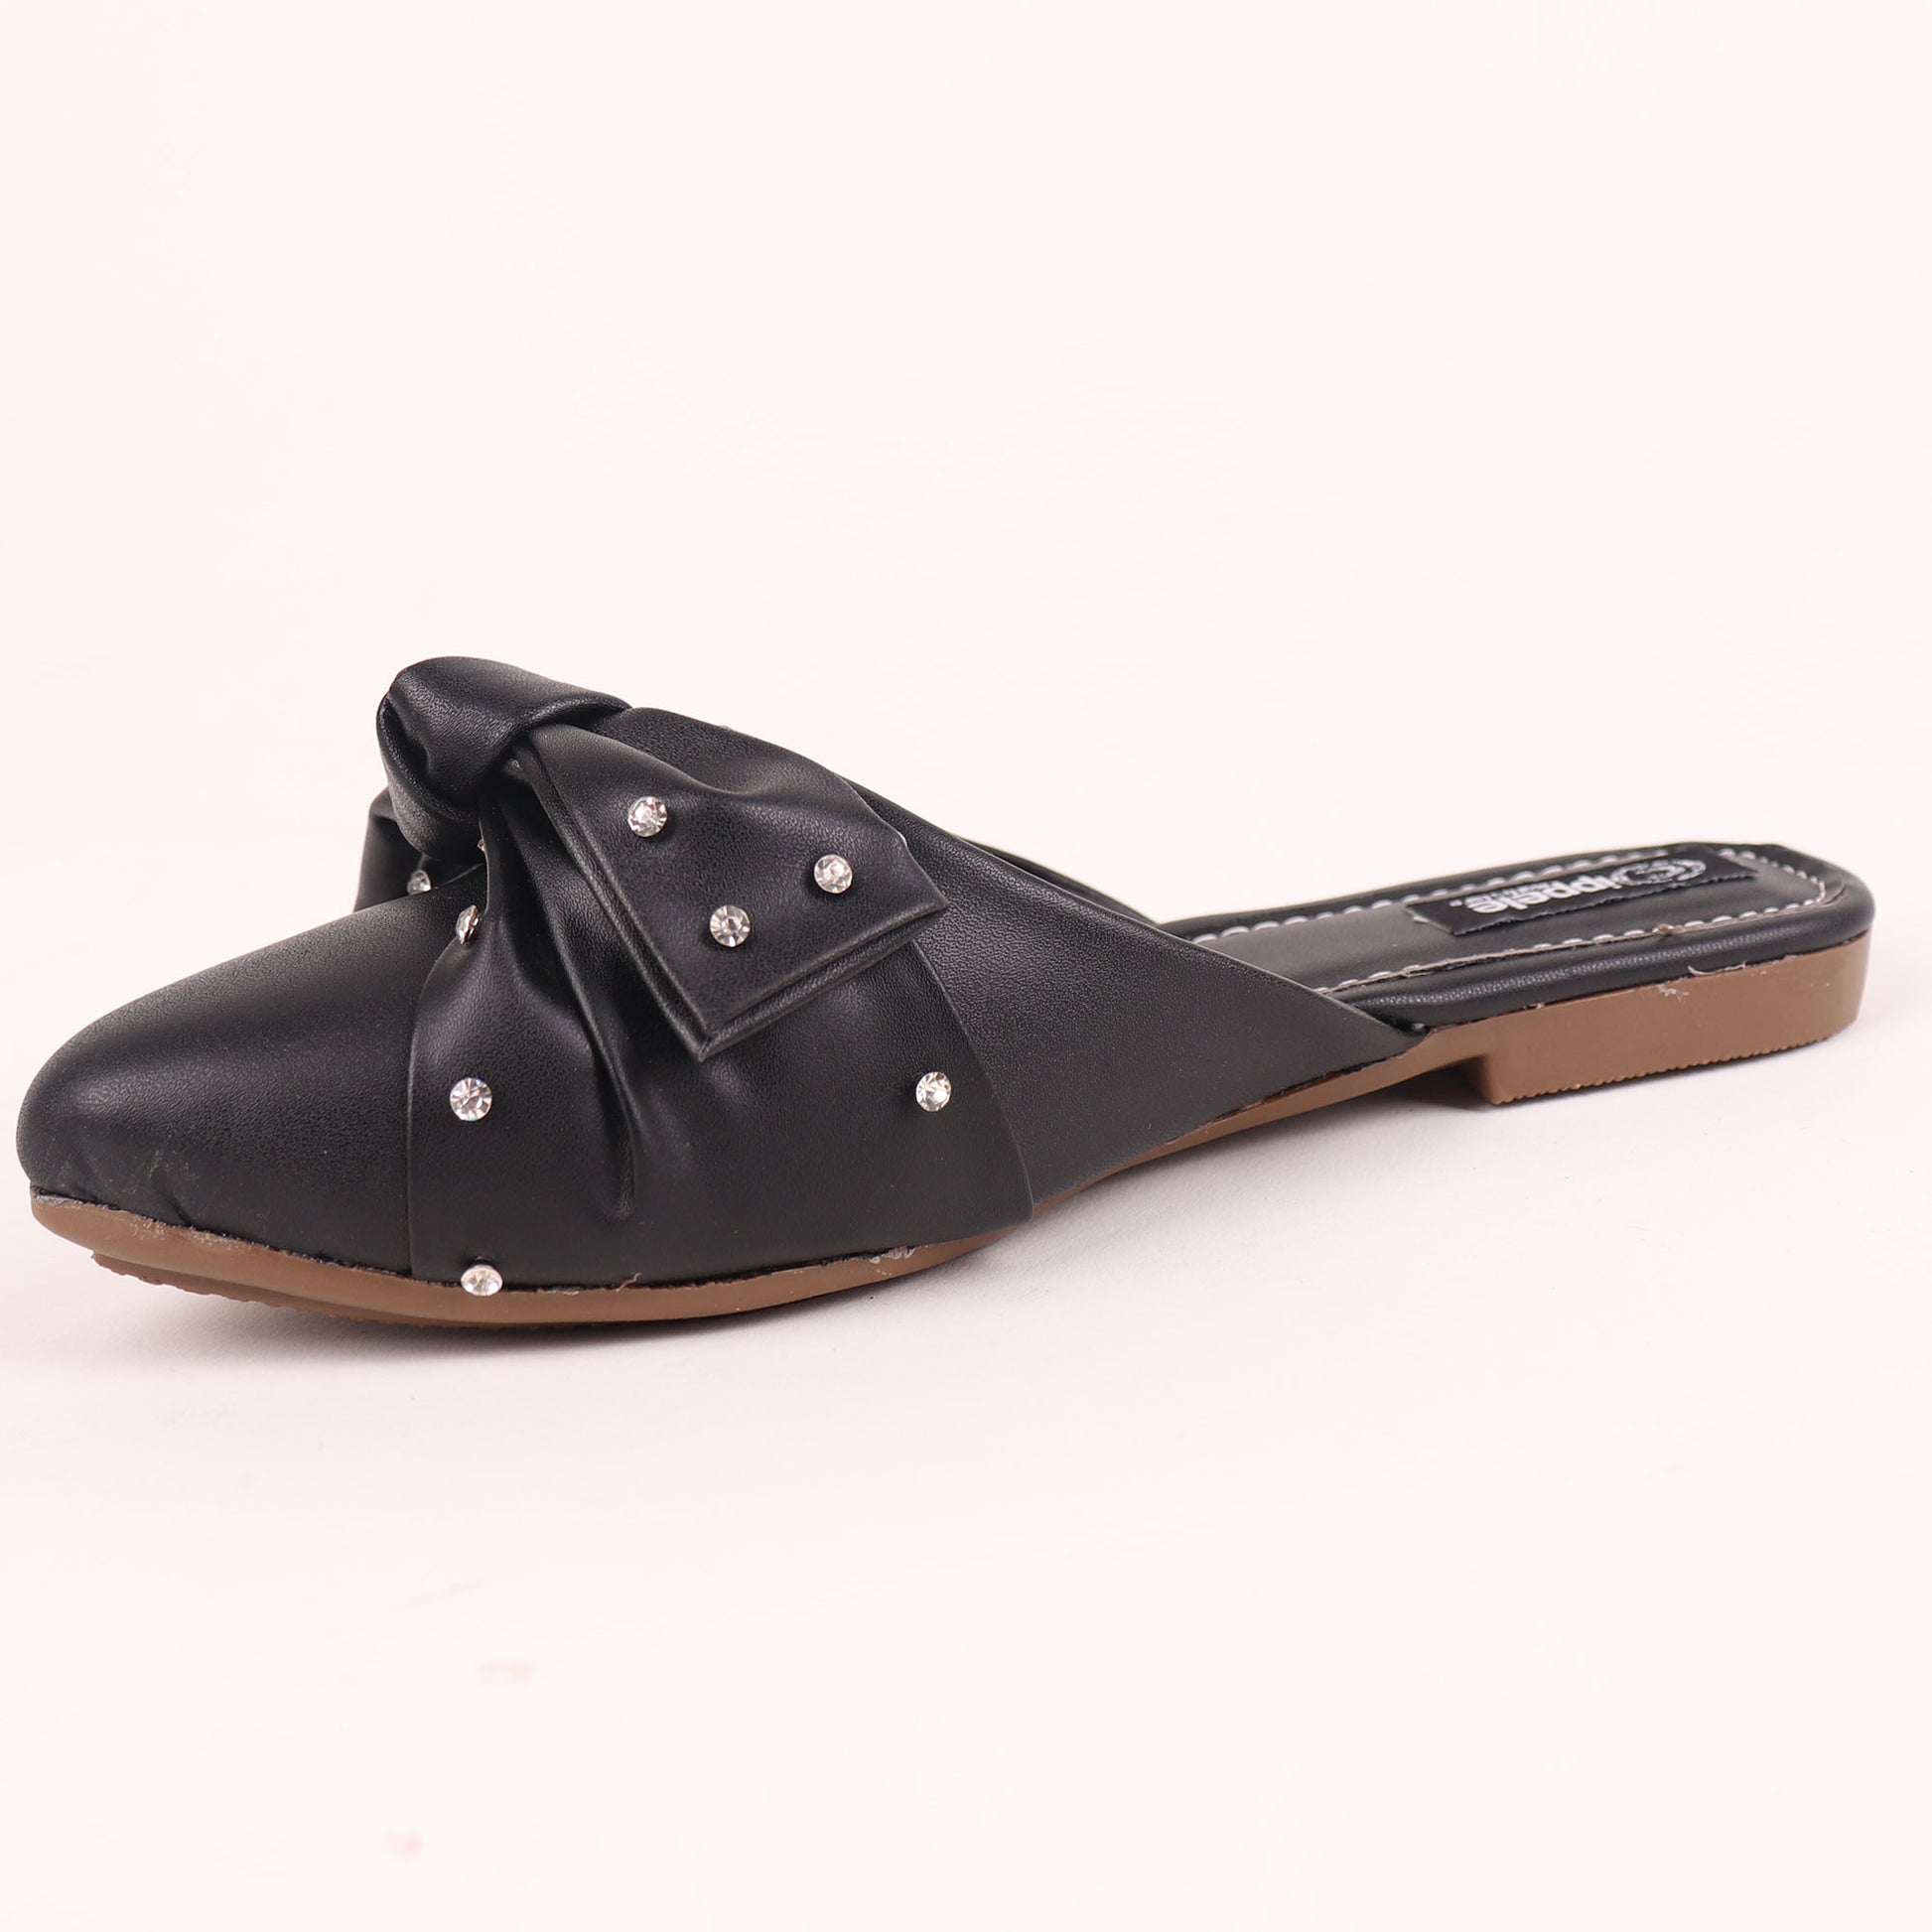 Foot Wear,The Kitten Bow Flats in Black - Cippele Multi Store